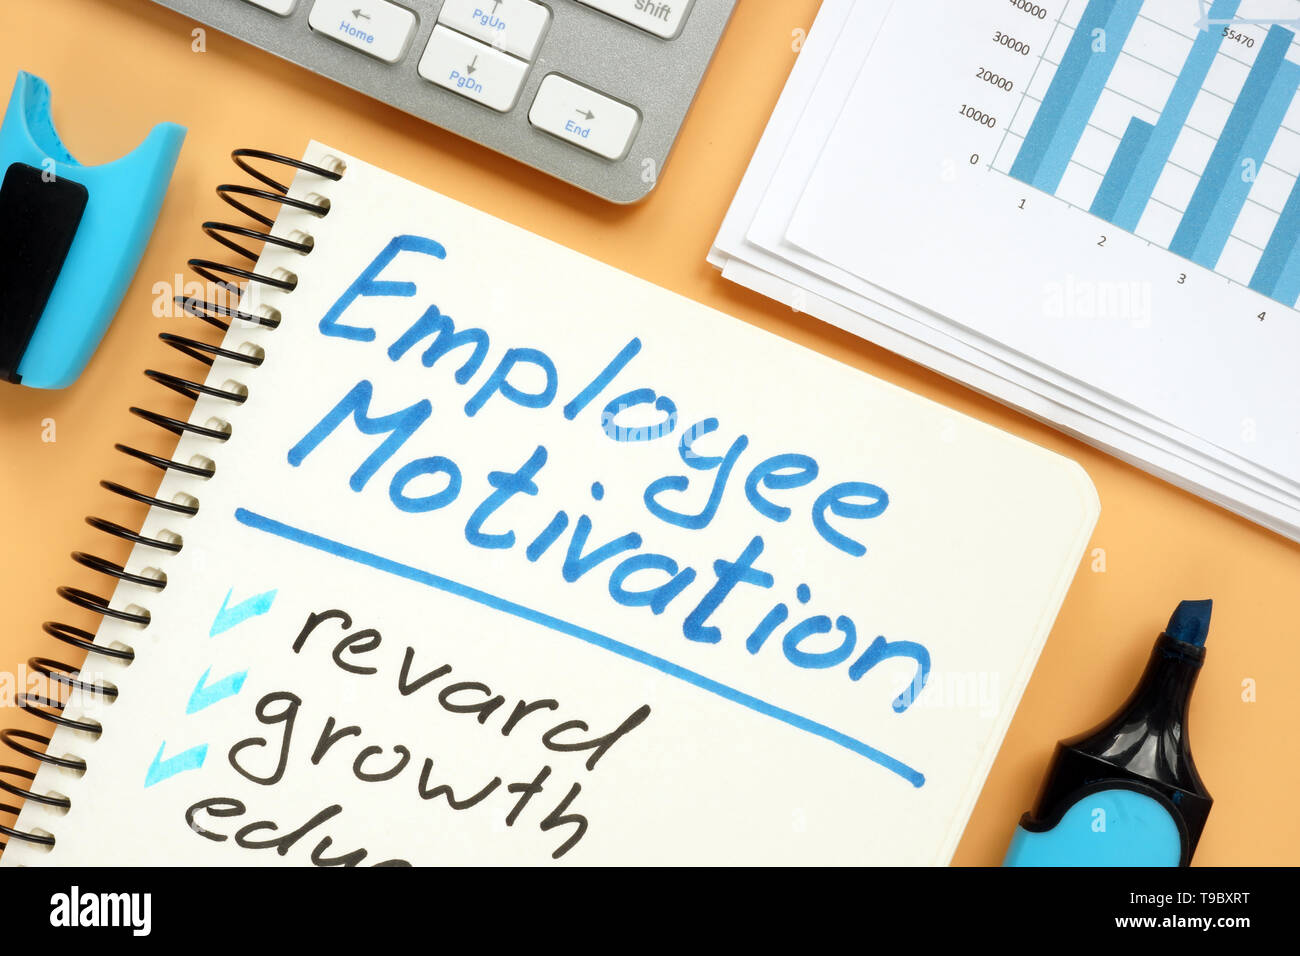 Die Motivation der Mitarbeiter planen mit Worten belohnen und Wachstum. Stockfoto